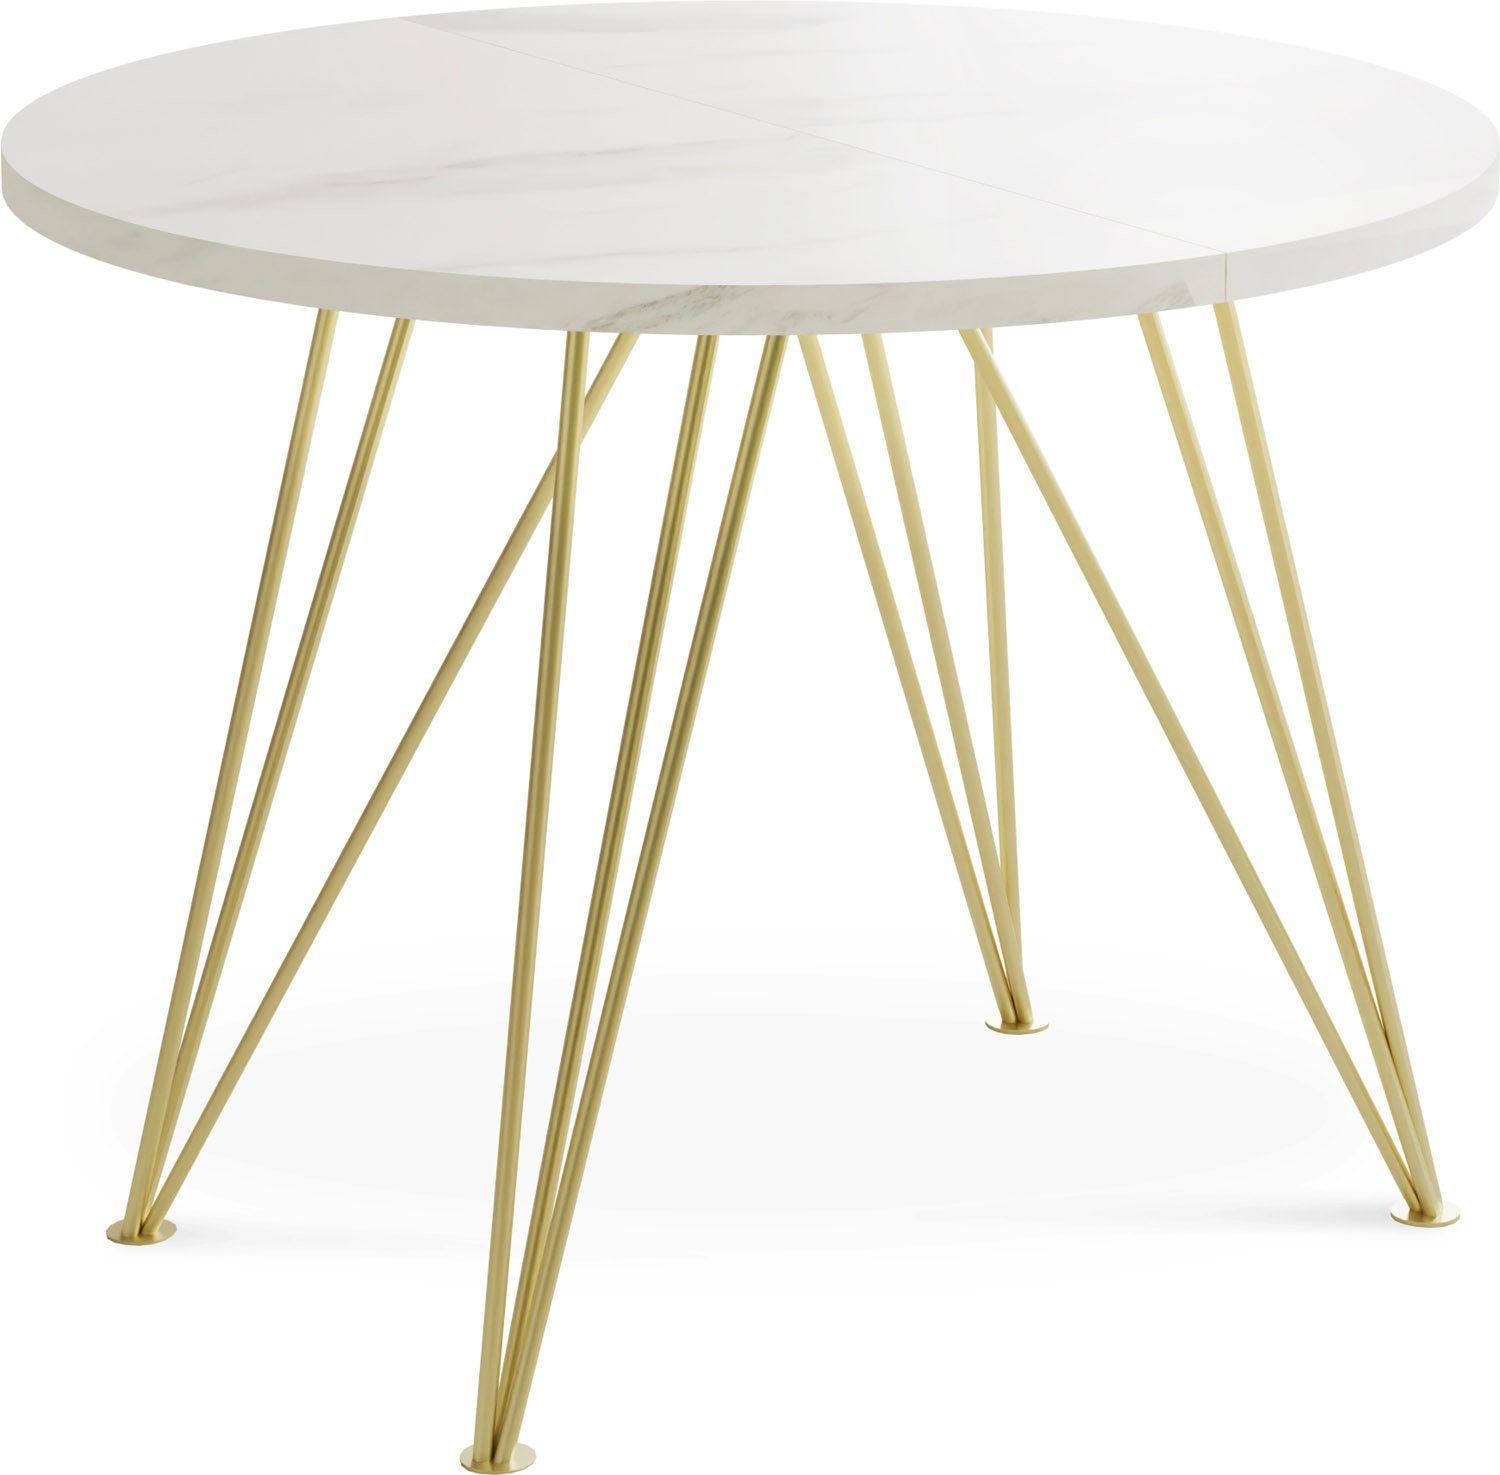 WFL GROUP Esstisch Castel, Glamour Stil Ausziehbarer Esstisch mit Goldenen Beinen Weiß Marmoroptik